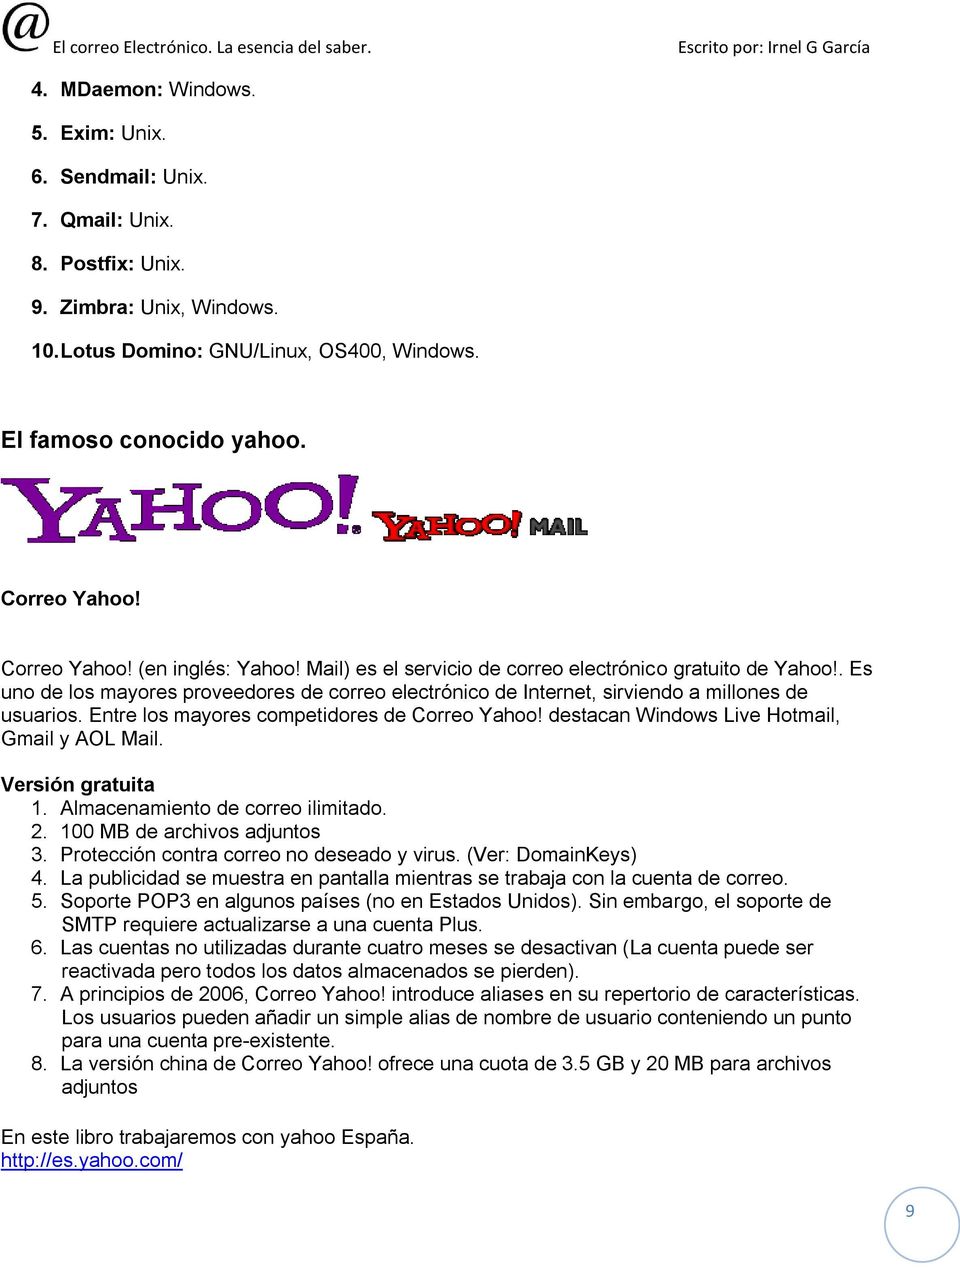 Entre los mayores competidores de Correo Yahoo! destacan Windows Live Hotmail, Gmail y AOL Mail. Versión gratuita 1. Almacenamiento de correo ilimitado. 2. 100 MB de archivos adjuntos 3.